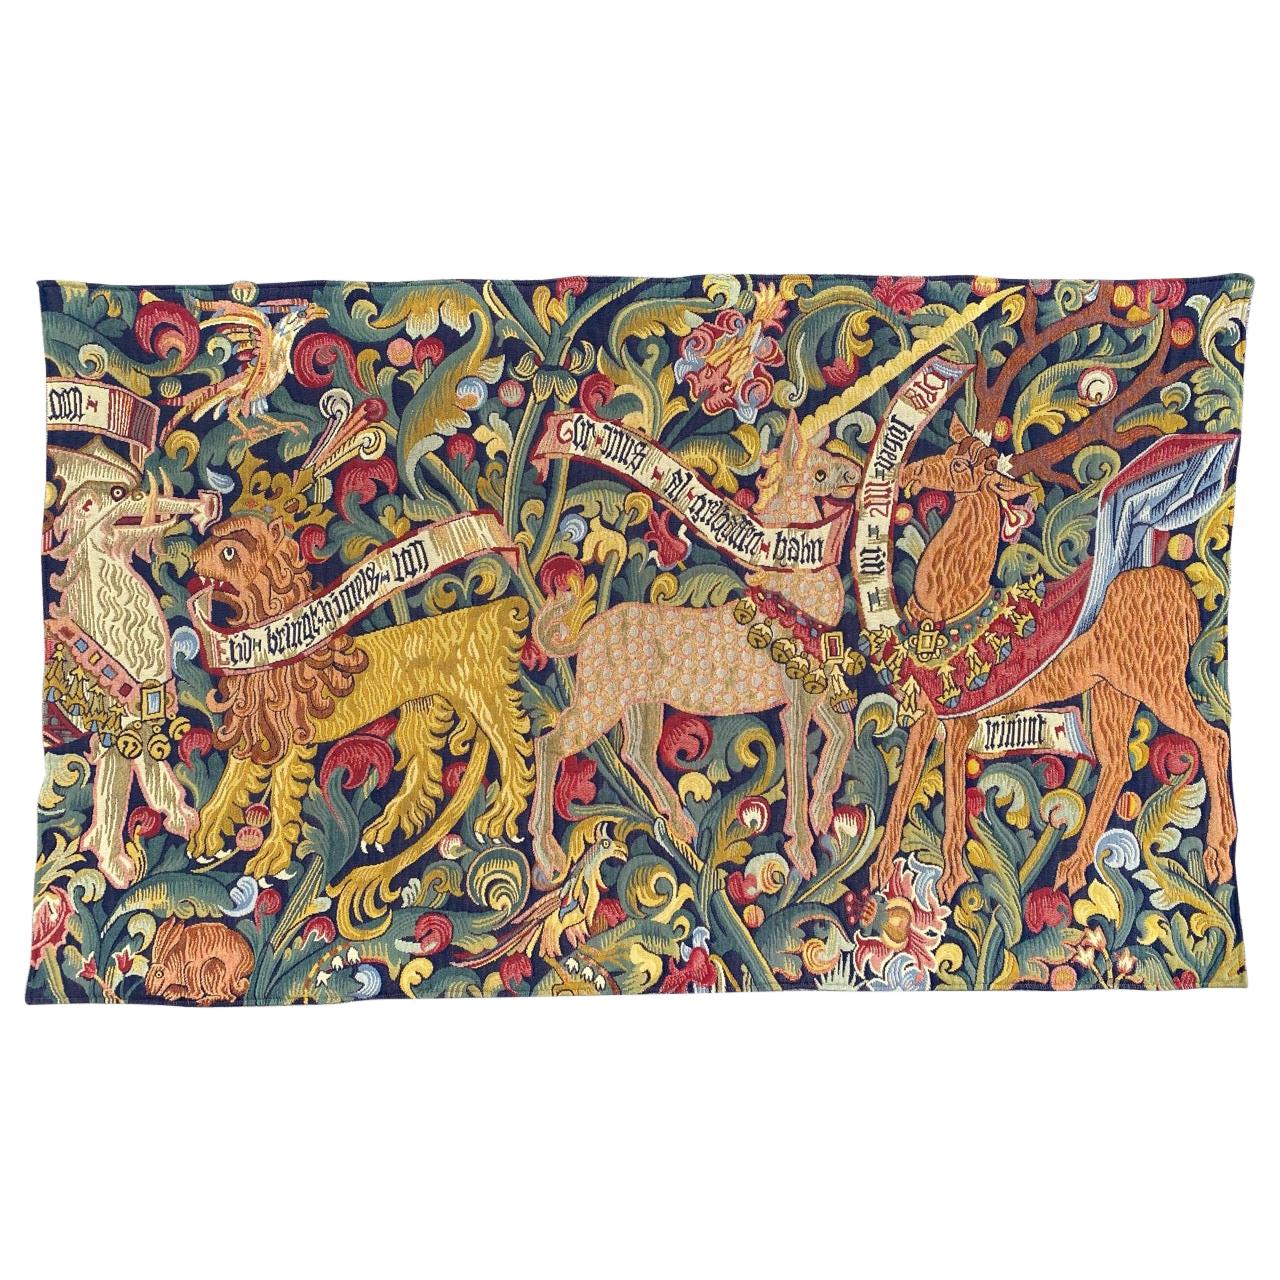 Französischer Jaquar-Wandteppich im Aubusson-Stil, mittelalterliches Design